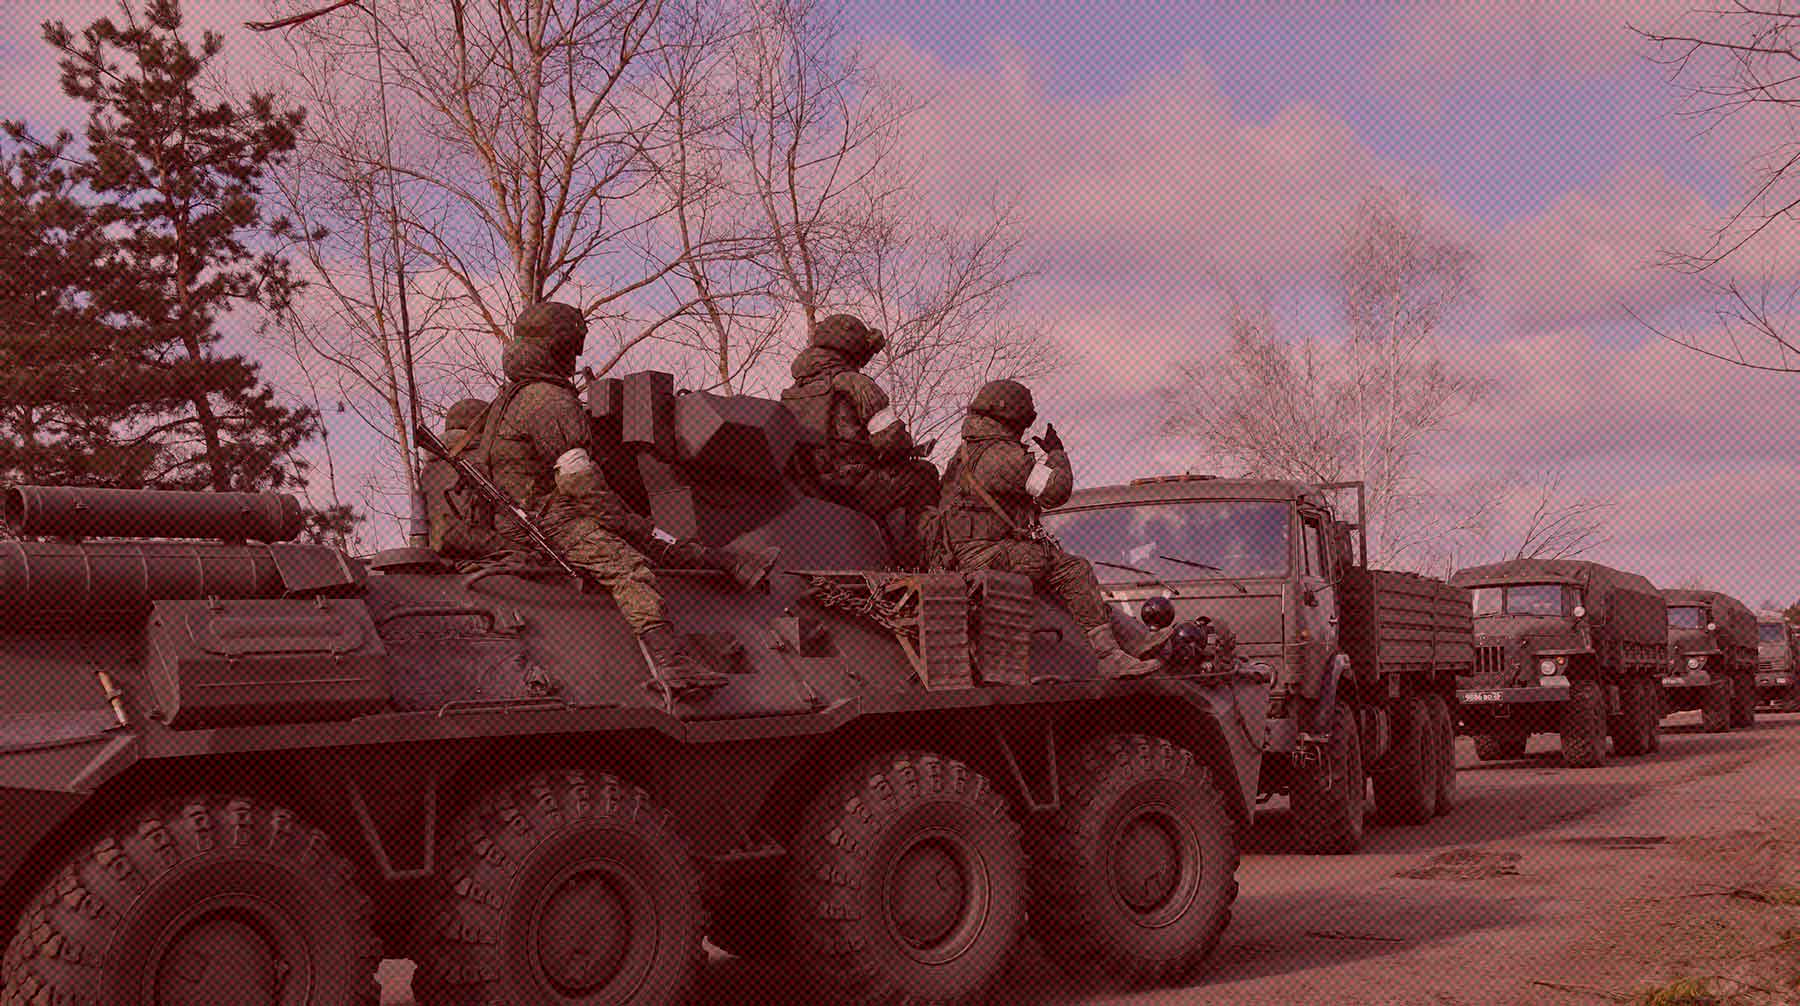 Полигон в Брестской области, где размещены солдаты и офицеры, посетит глава республики Александр Лукашенко Фото: Global Look Press / Комсомольская правда